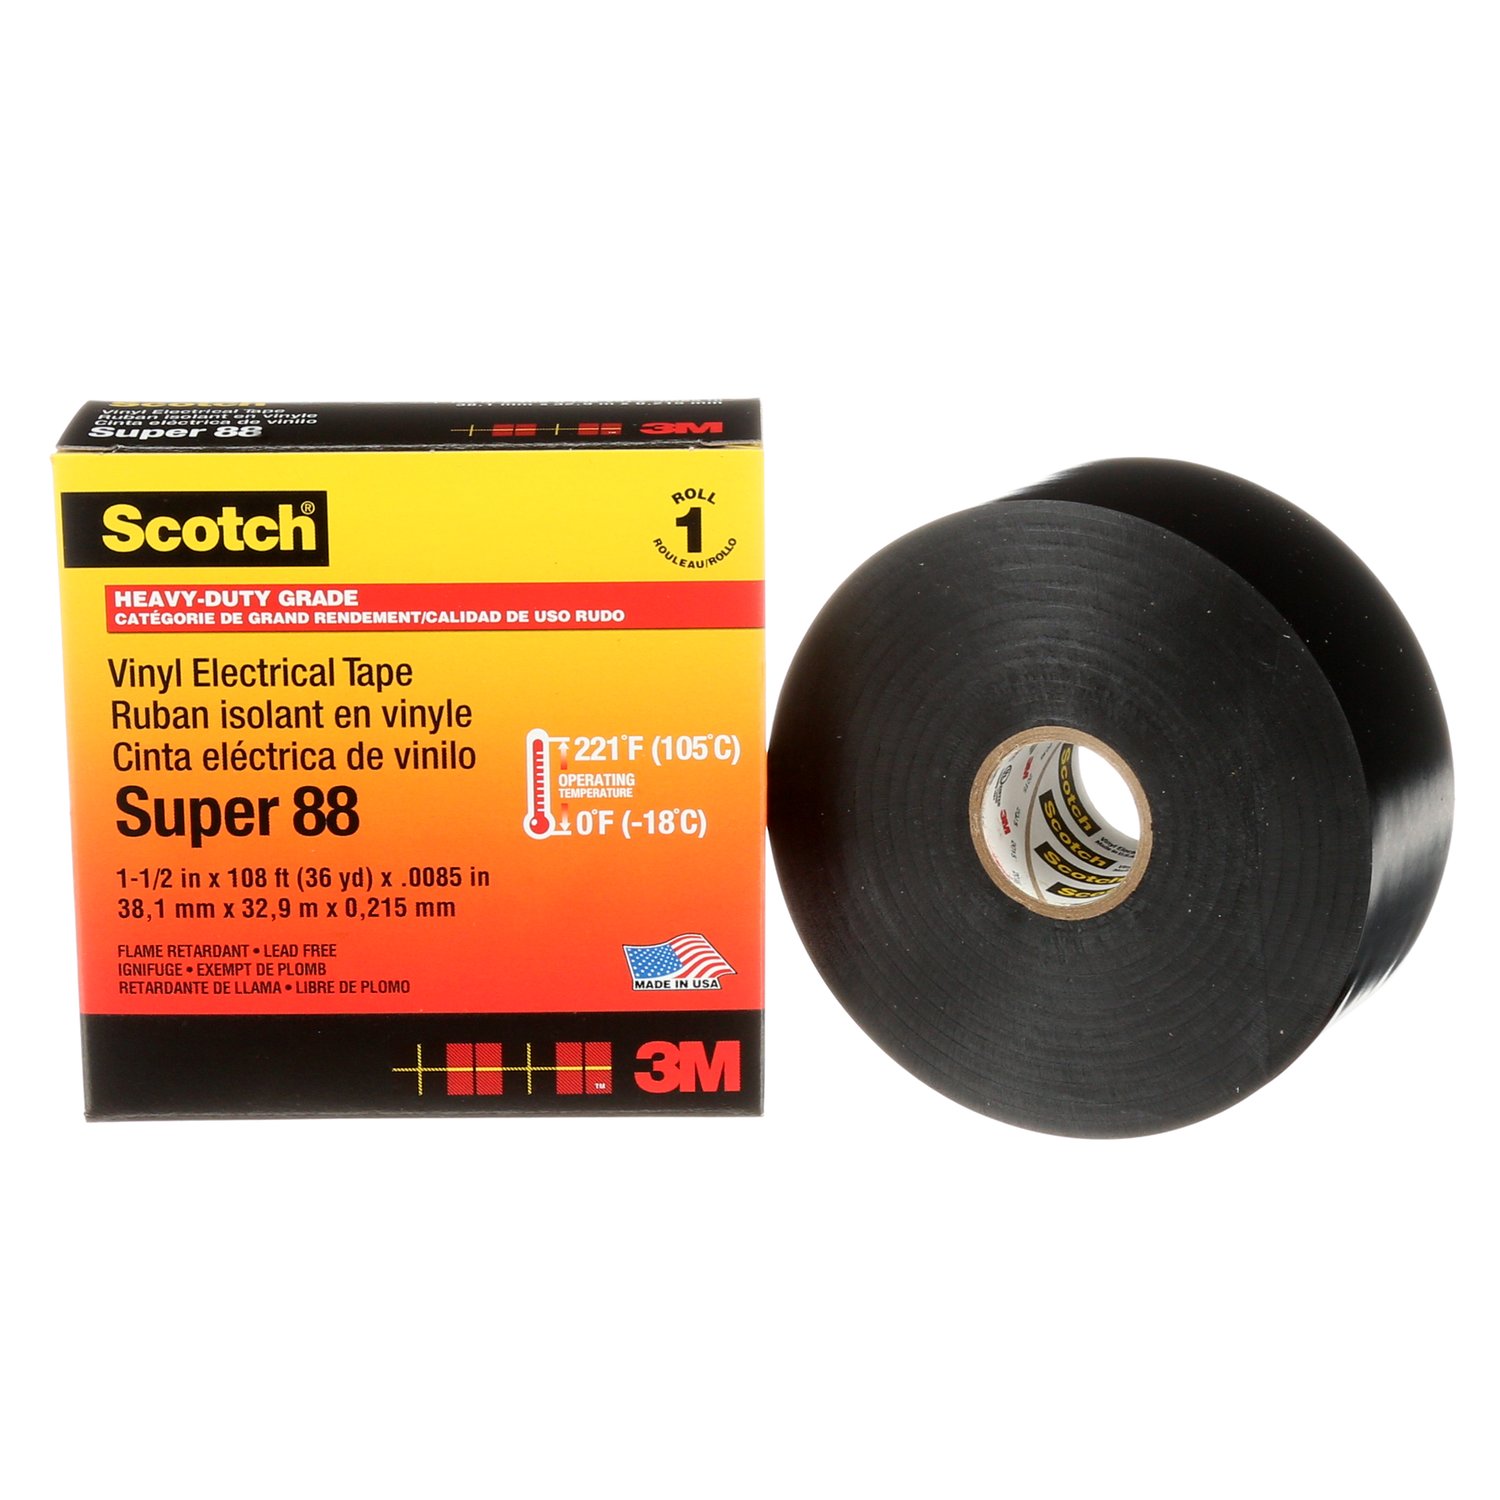 7000031459 - Scotch Vinyl Electrical Tape Super 88, 1-1/2 in x 36 yd, Black, 12
rolls/Case